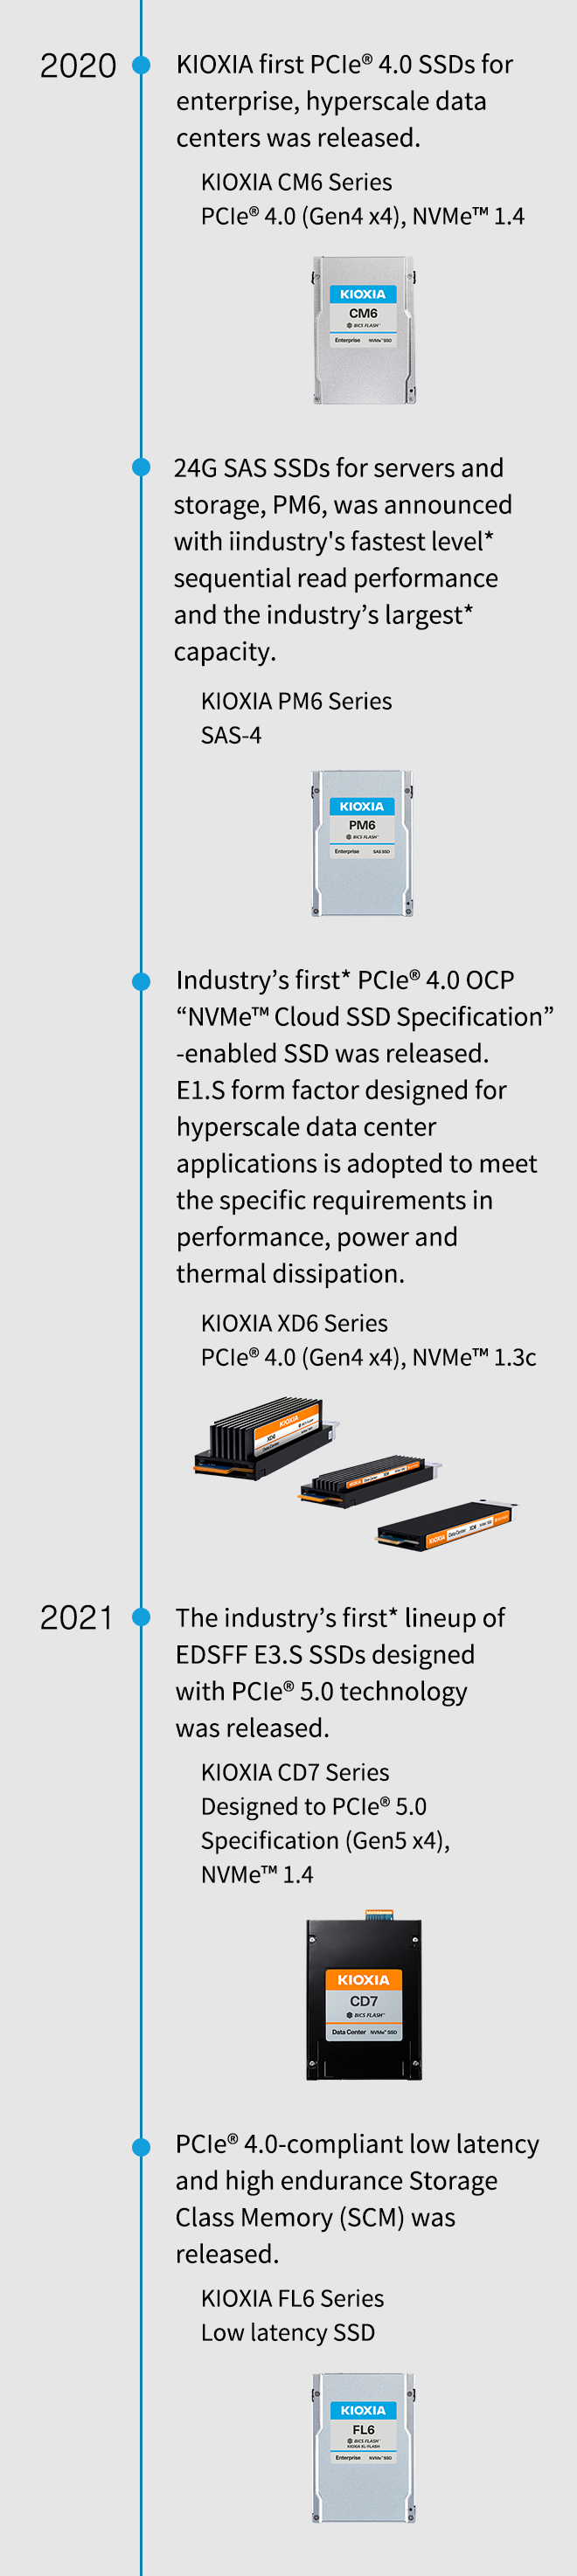 2020 年。推出 KIOXIA 首款適用於企業、超大規模資料中心的 PCIe® 4.0 SSD。KIOXIA CM6 系列 PCIe® 4.0 (Gen4 x4)、NVMe 1.4。推出 PM6 (適用於伺服器和儲存裝置的 24G SAS SSD)，以業界最快* 連續讀取效能和業界最大* 容量發表。KIOXIA PM6 系列 SAS-4。推出業界首款* PCIe® 4.0 OCP「NVMe™ 雲端 SSD 規格」SSD。採用專為超大規模資料中心應用設計的 E1.S 外型規格，以滿足特定效能、功耗和散熱要求。KIOXIA XD6 系列 PCIe® 4.0 (Gen4 x4)、NVMe™ 1.3c。2021 年。推出業界首款* 採用 PCIe® 5.0 技術的 EDSFF E3.S SSD 系列。KIOXIA CD7 系列 專為 PCIe® 5.0 規格 (Gen5 x4)、NVMe 1.4 而設計。推出 PCIe® 4.0 相容低延遲和高耐久度儲存級記憶體 (SCM)。KIOXIA FL6 系列低延遲 SSD